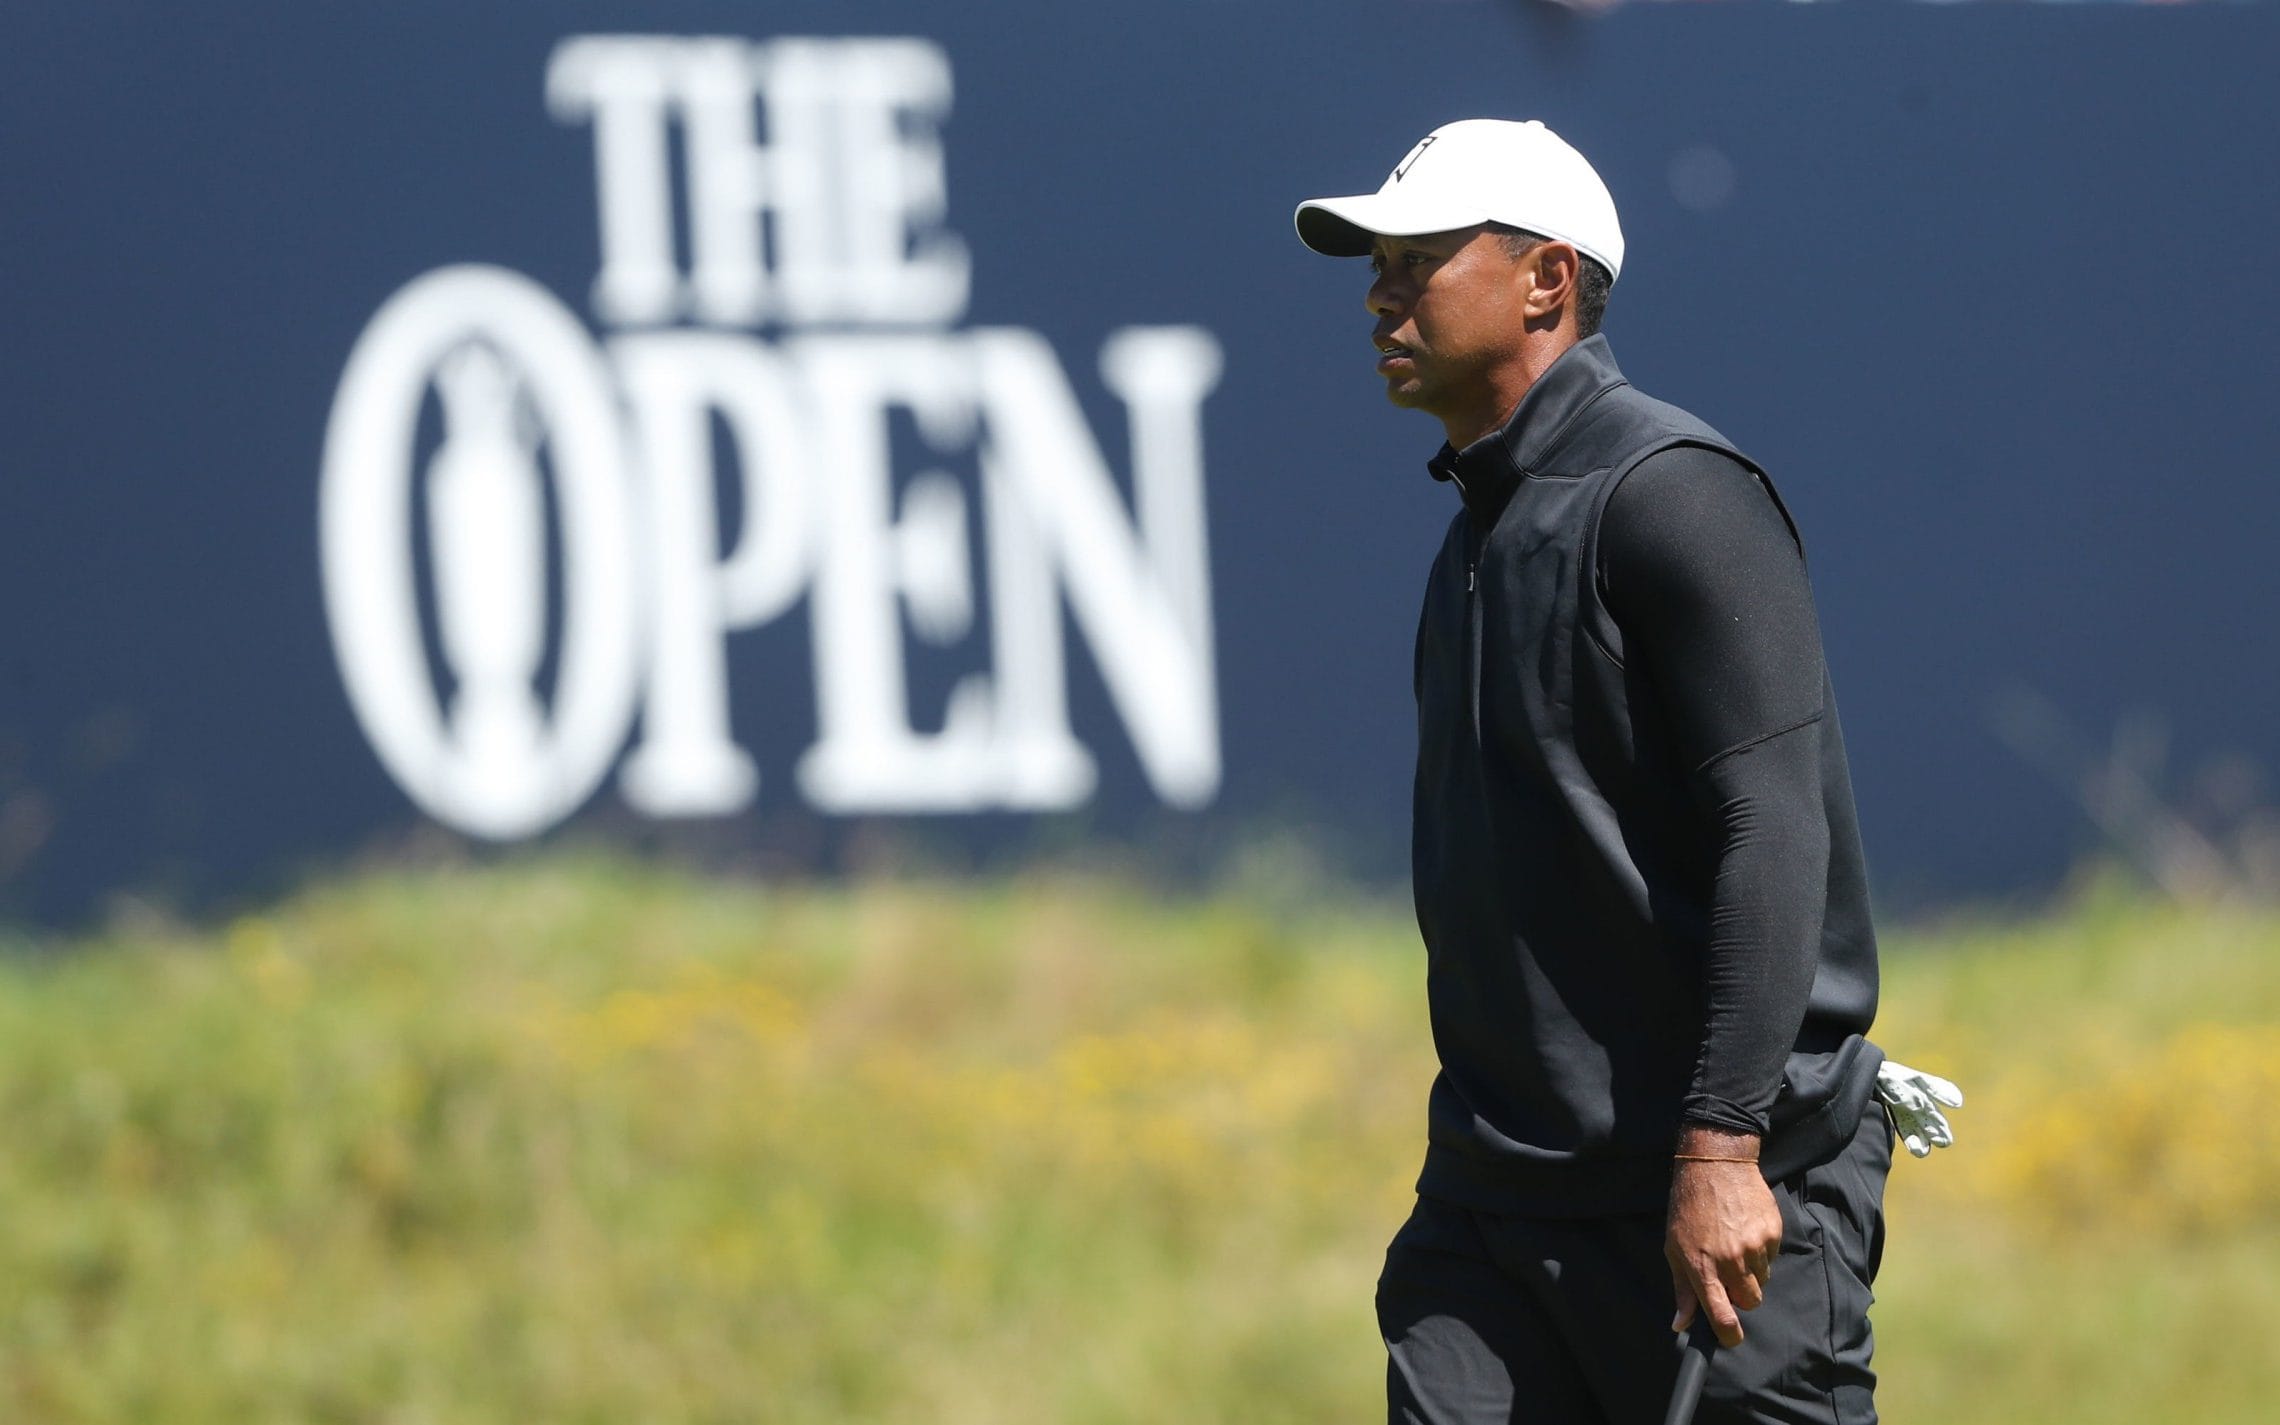 The Open 2019: Tiger Woods và Rory McIlroy sẽ thi đấu cùng nhóm với ai, khi nào?